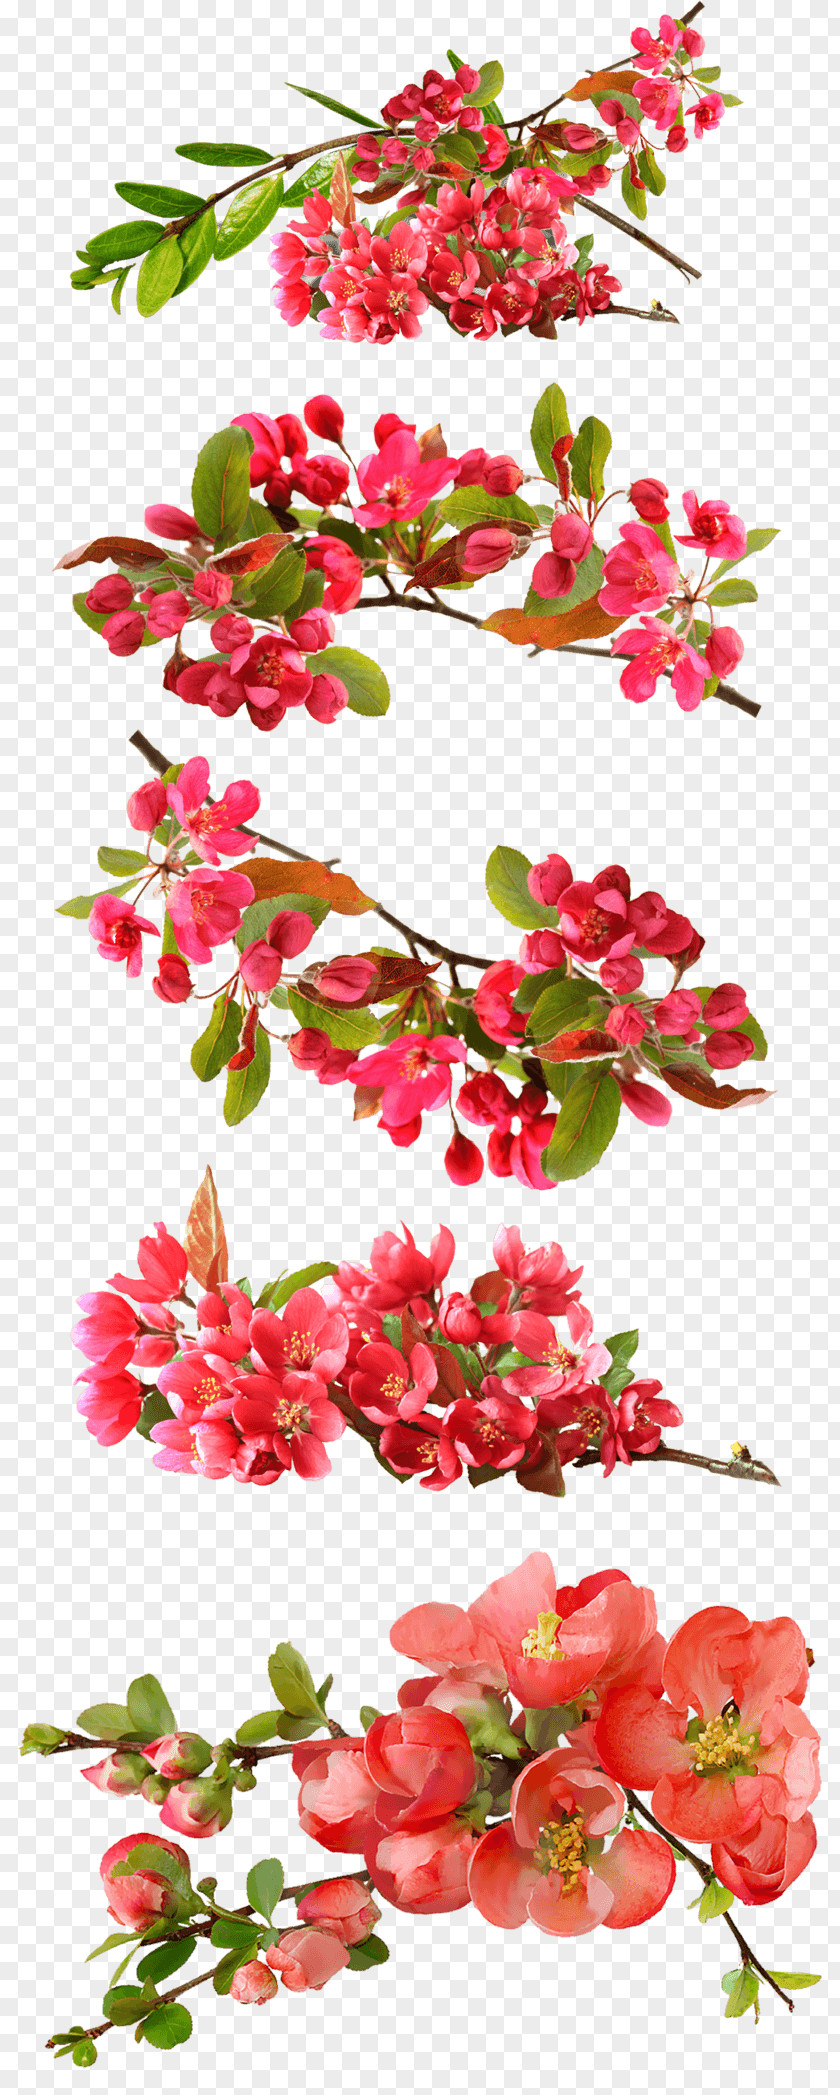 Red Vintage Floral Image Desktop Wallpaper Clip Art Stock.xchng PNG